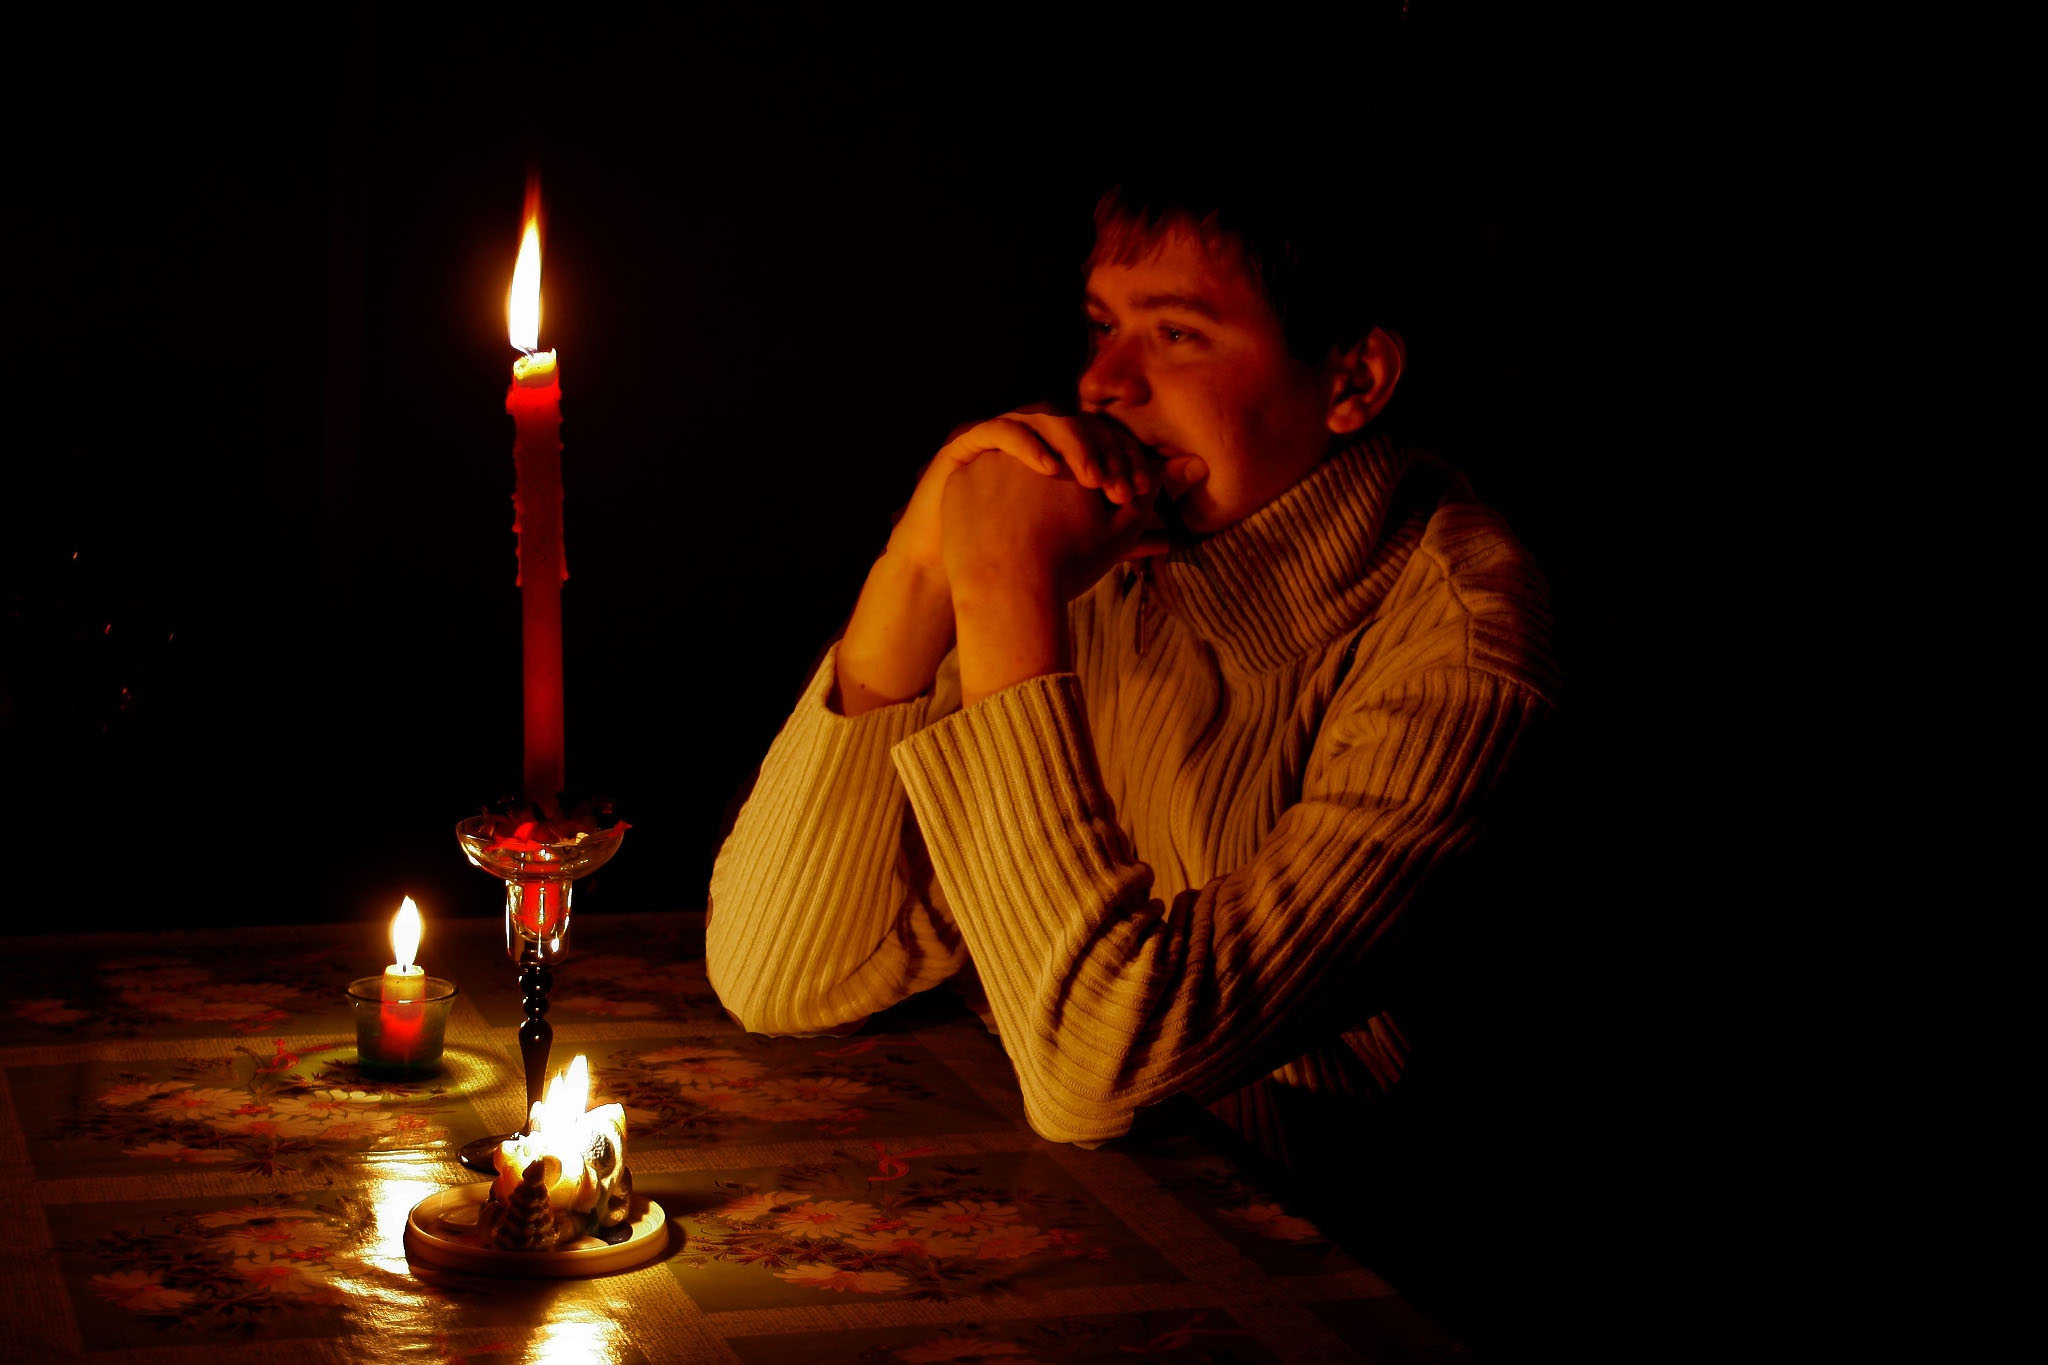 Песня на столе коньяк и свечи догорают. Человек со свечой. Мужчина со свечкой. Человек со свечой в темноте. Парень со свечей.